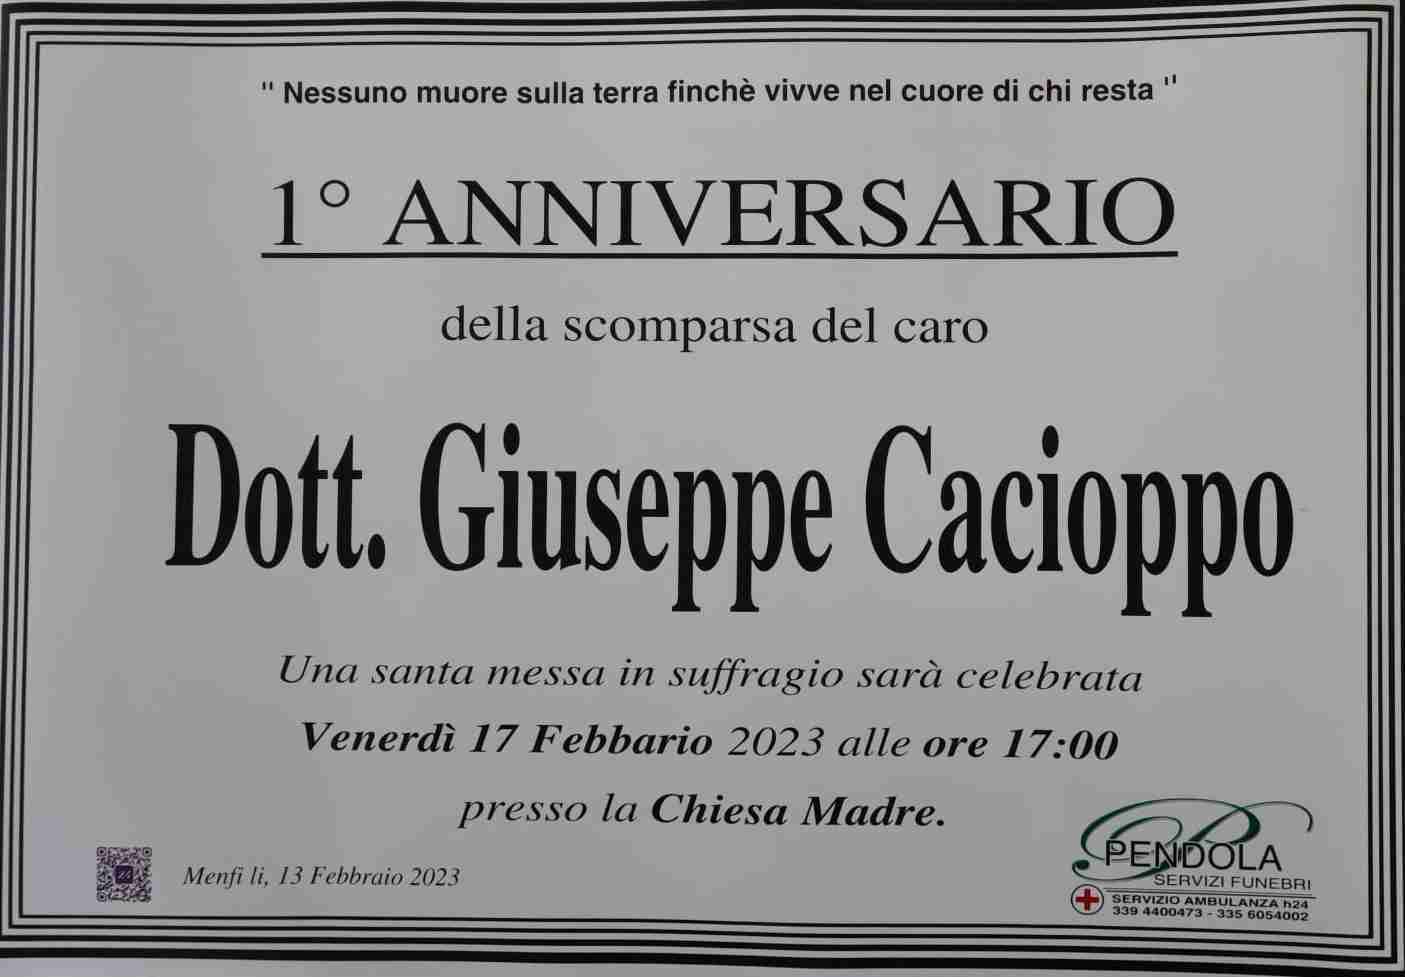 Dott. Giuseppe Cacioppo